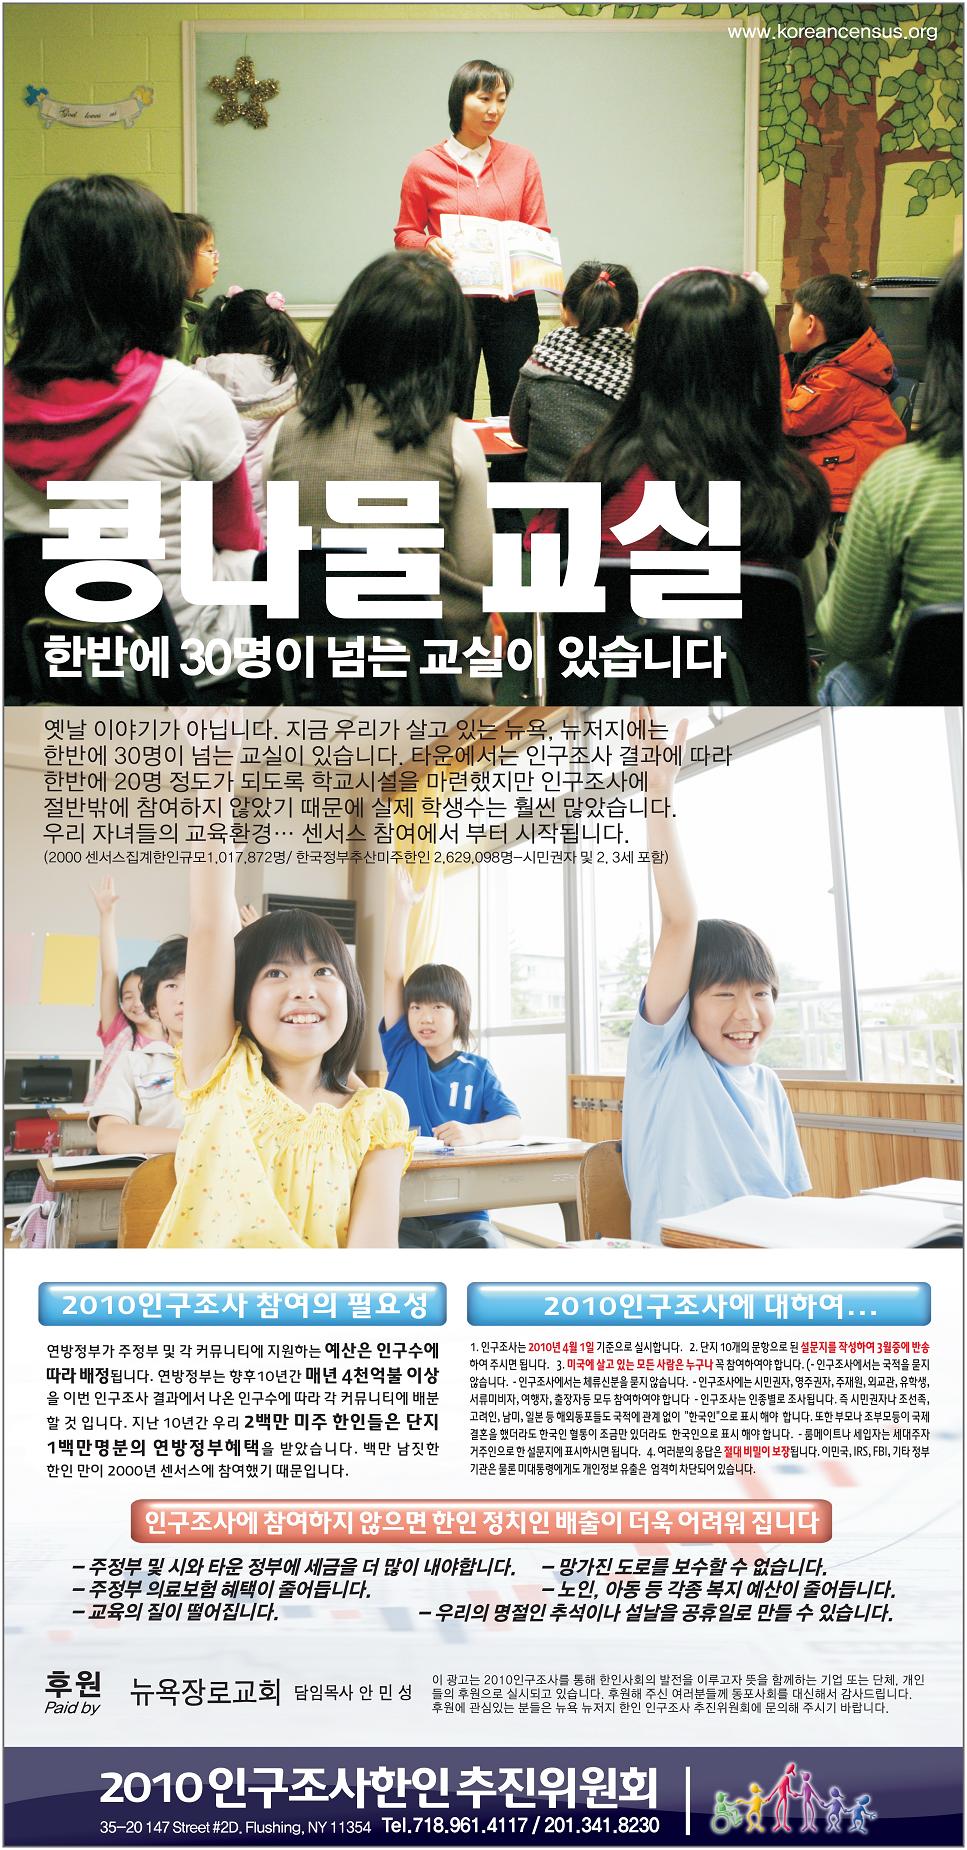 2010 KACTF Newspaper Advertisement – Bean-Sprout Class